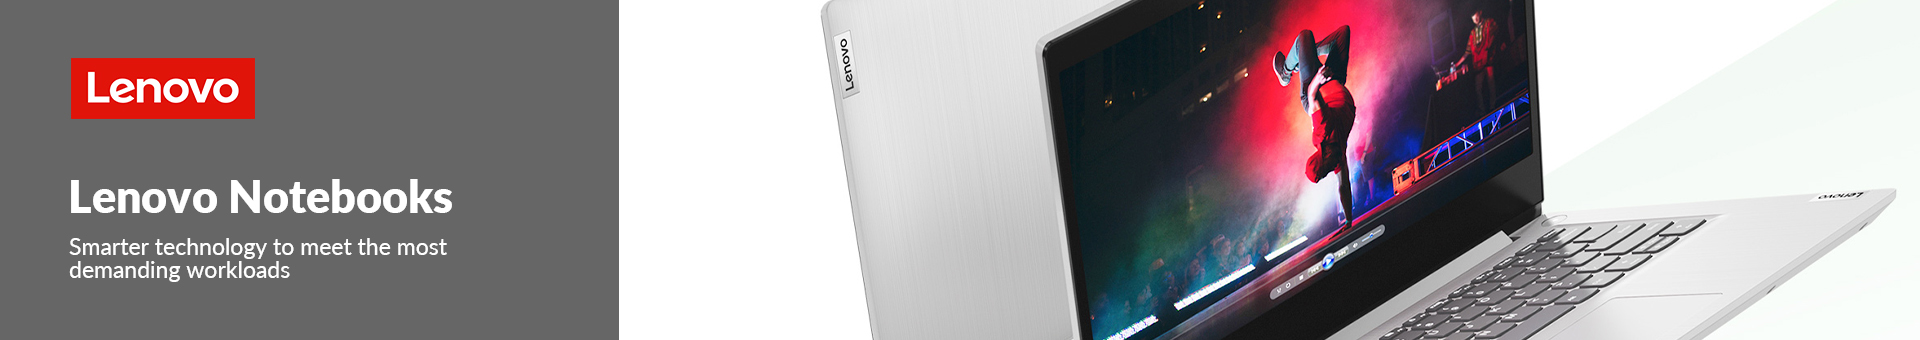 Lenovo Notebooks Refresh 3.4.22banner